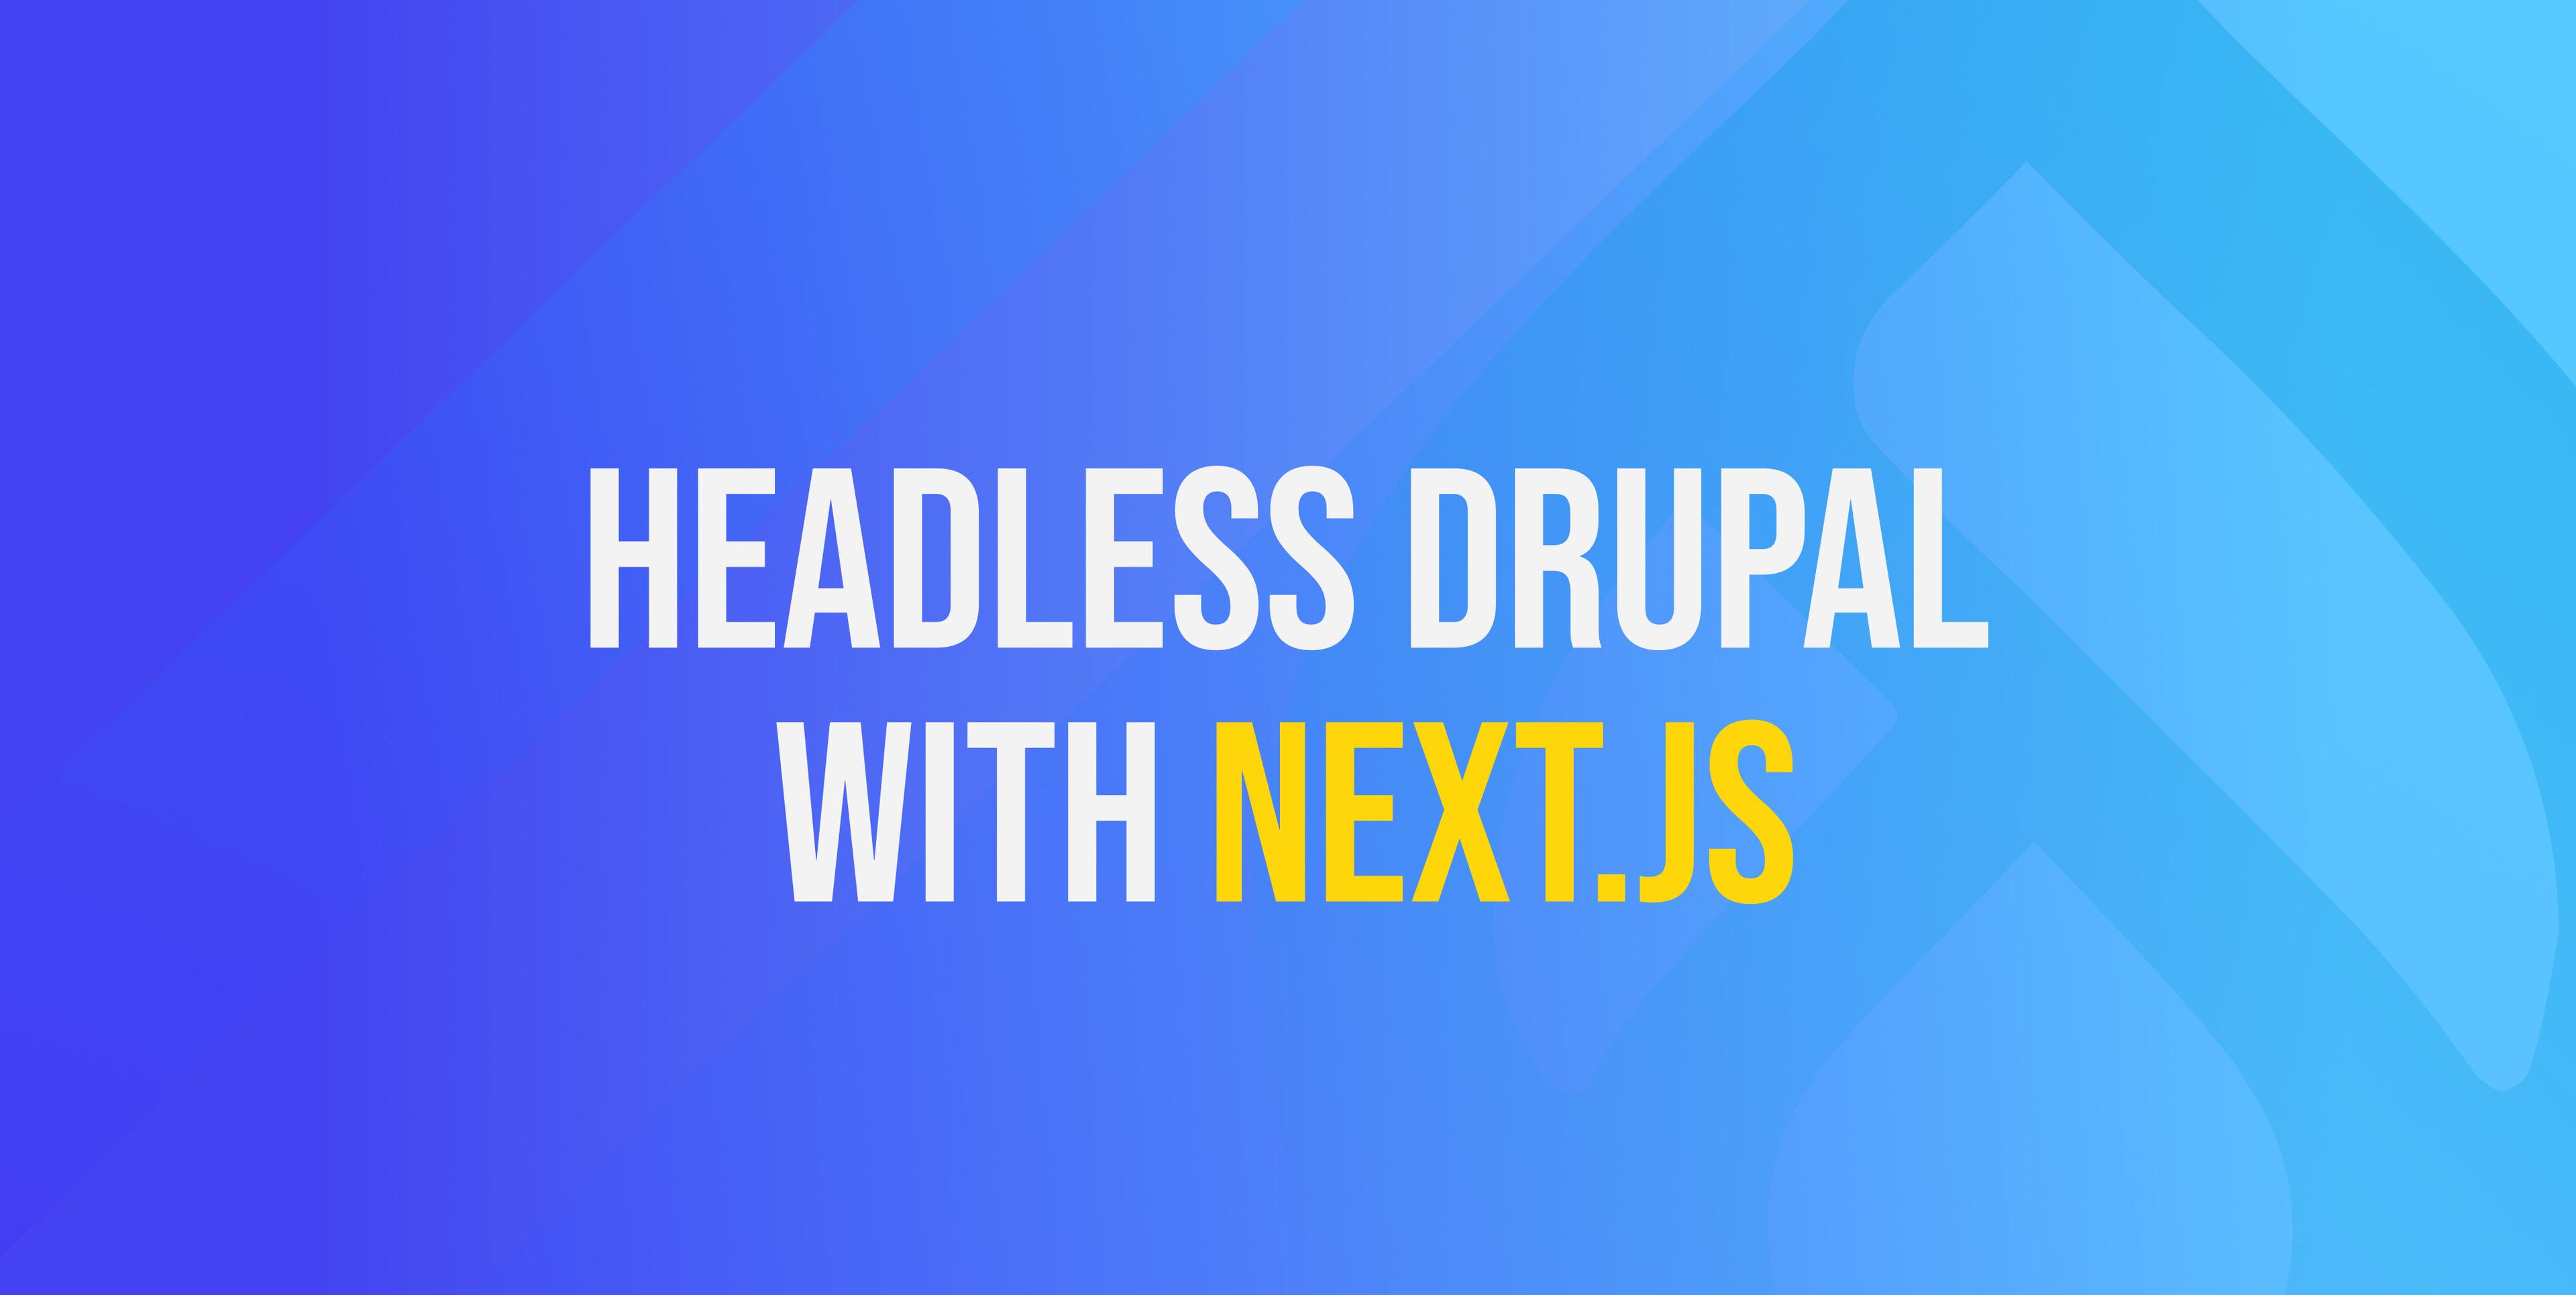 Kopfloses Drupal mit Next.js - einfaches Beispiel für einen Durchgang